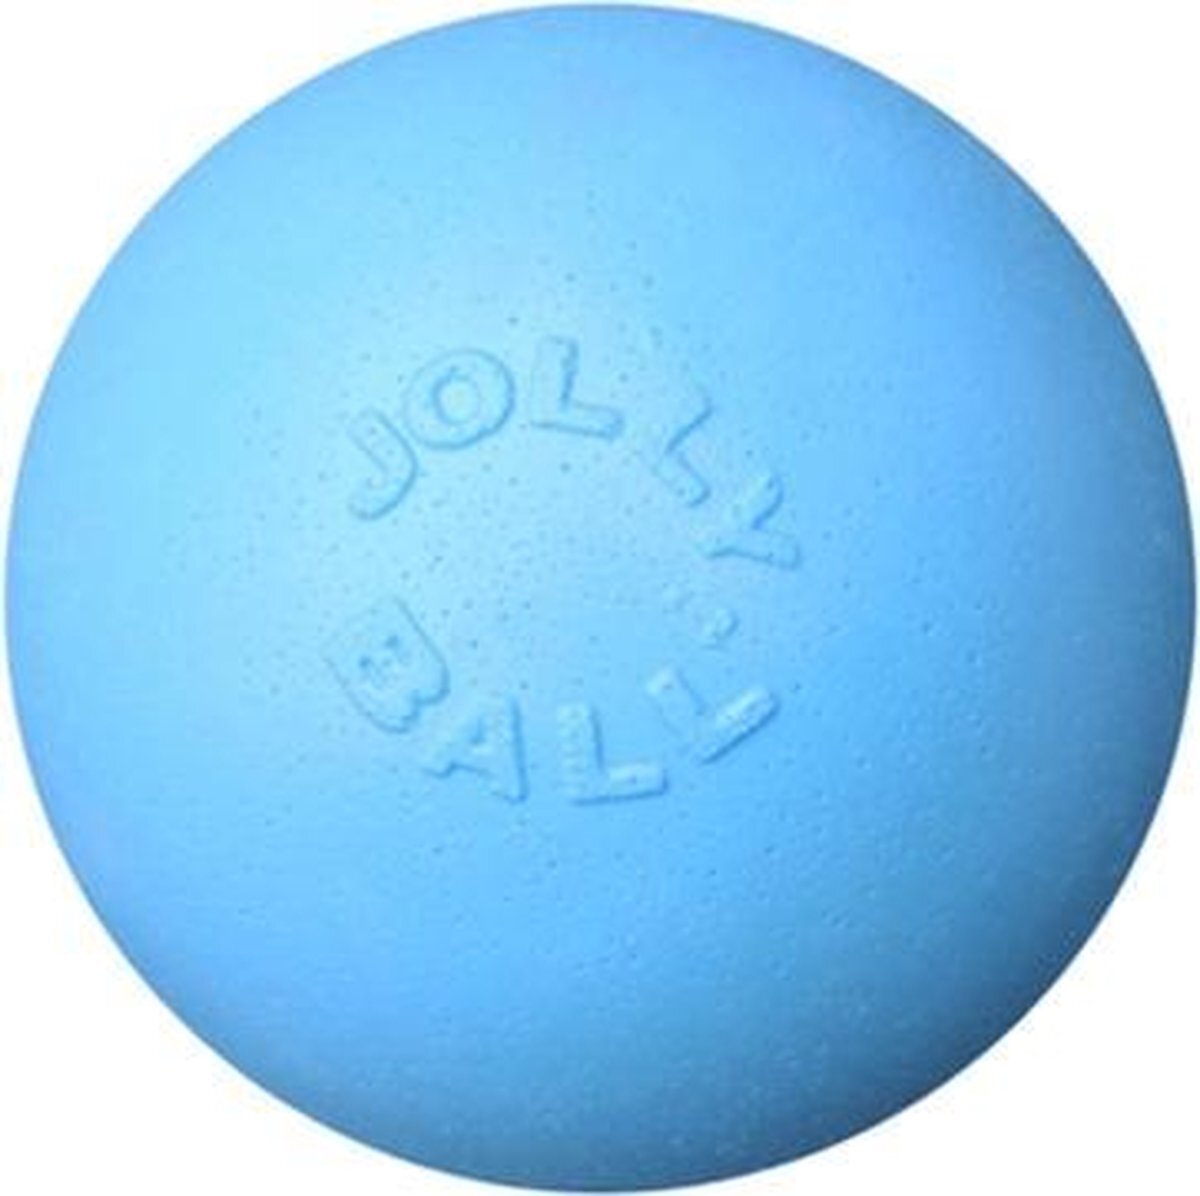 Jolly Pets Jolly ball bouncen play blauw blauw